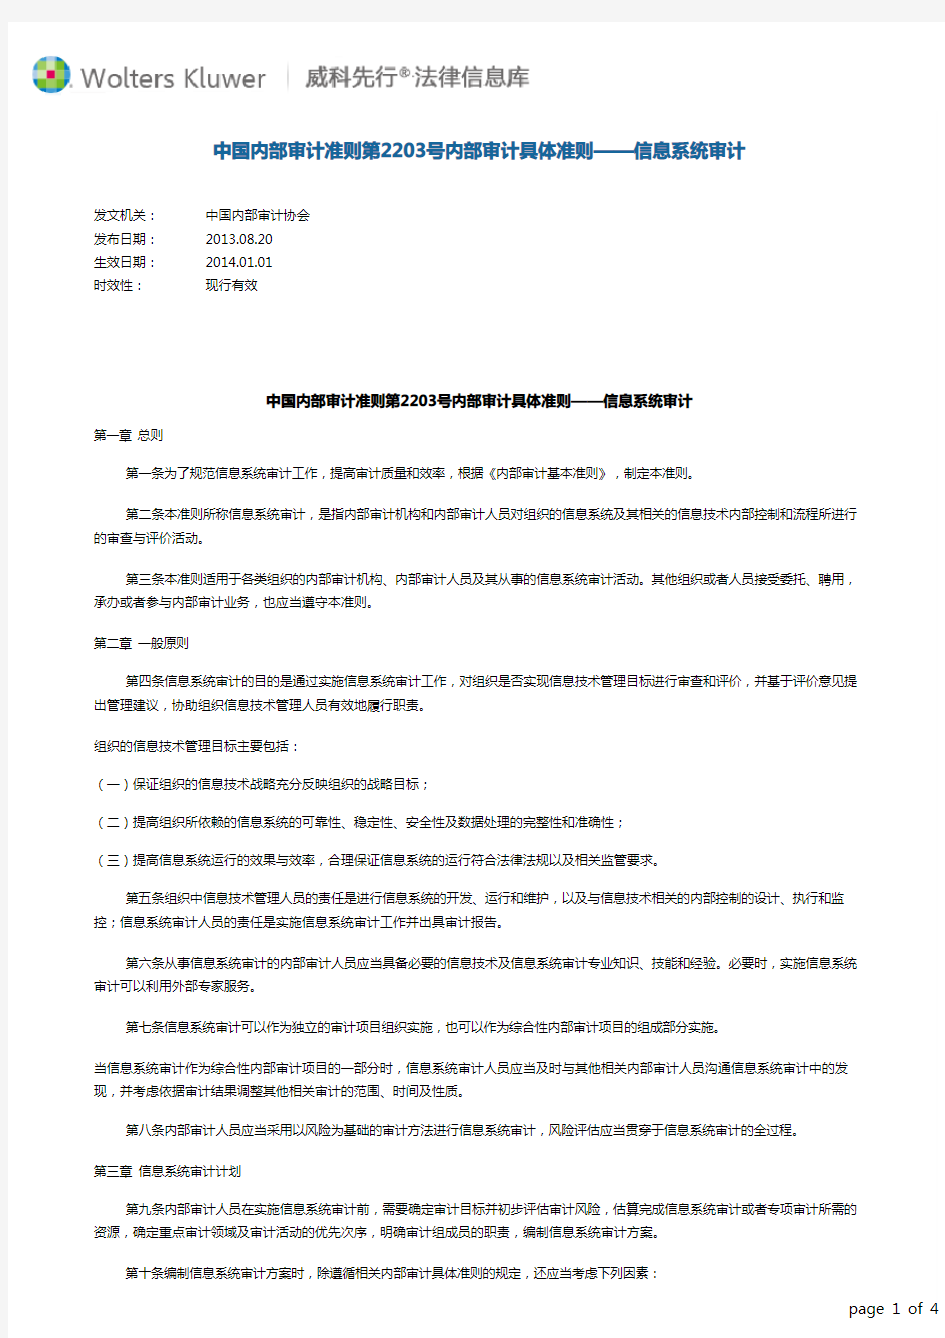 中国内部审计准则第2203号内部审计具体准则——信息系统审计